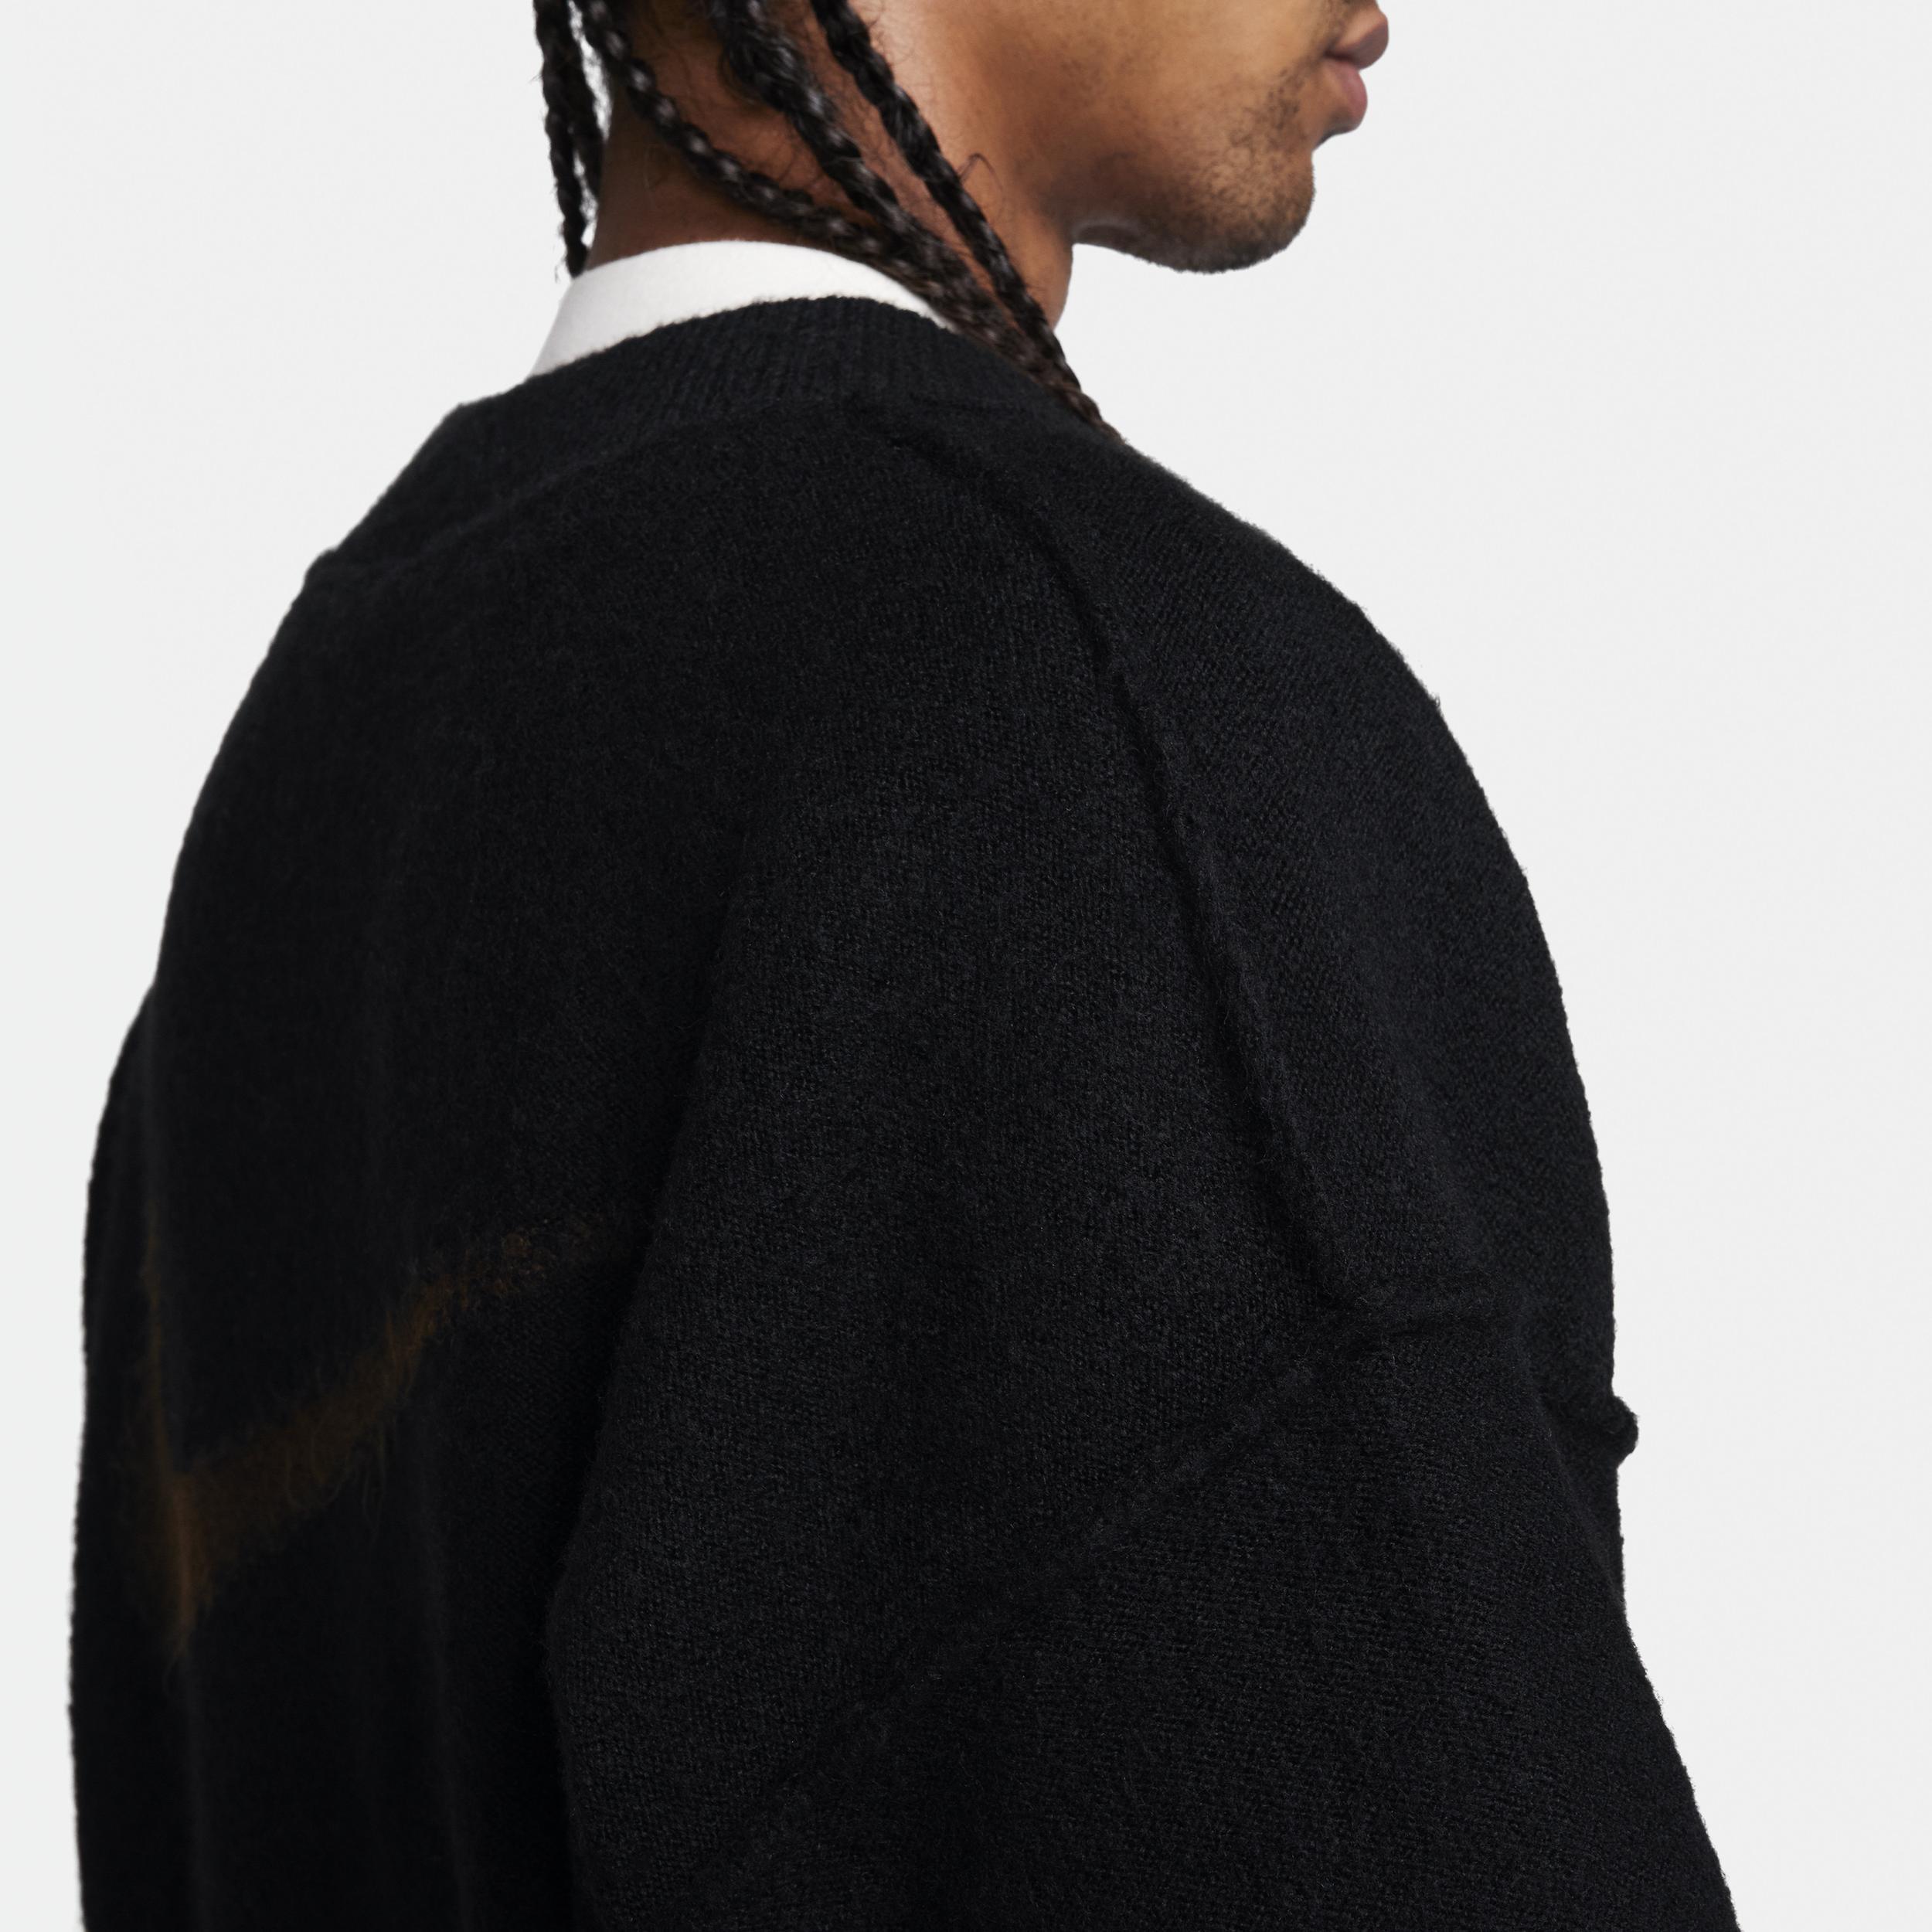 Men's Nike Sportswear Tech Pack Knit Sweater  Product Image